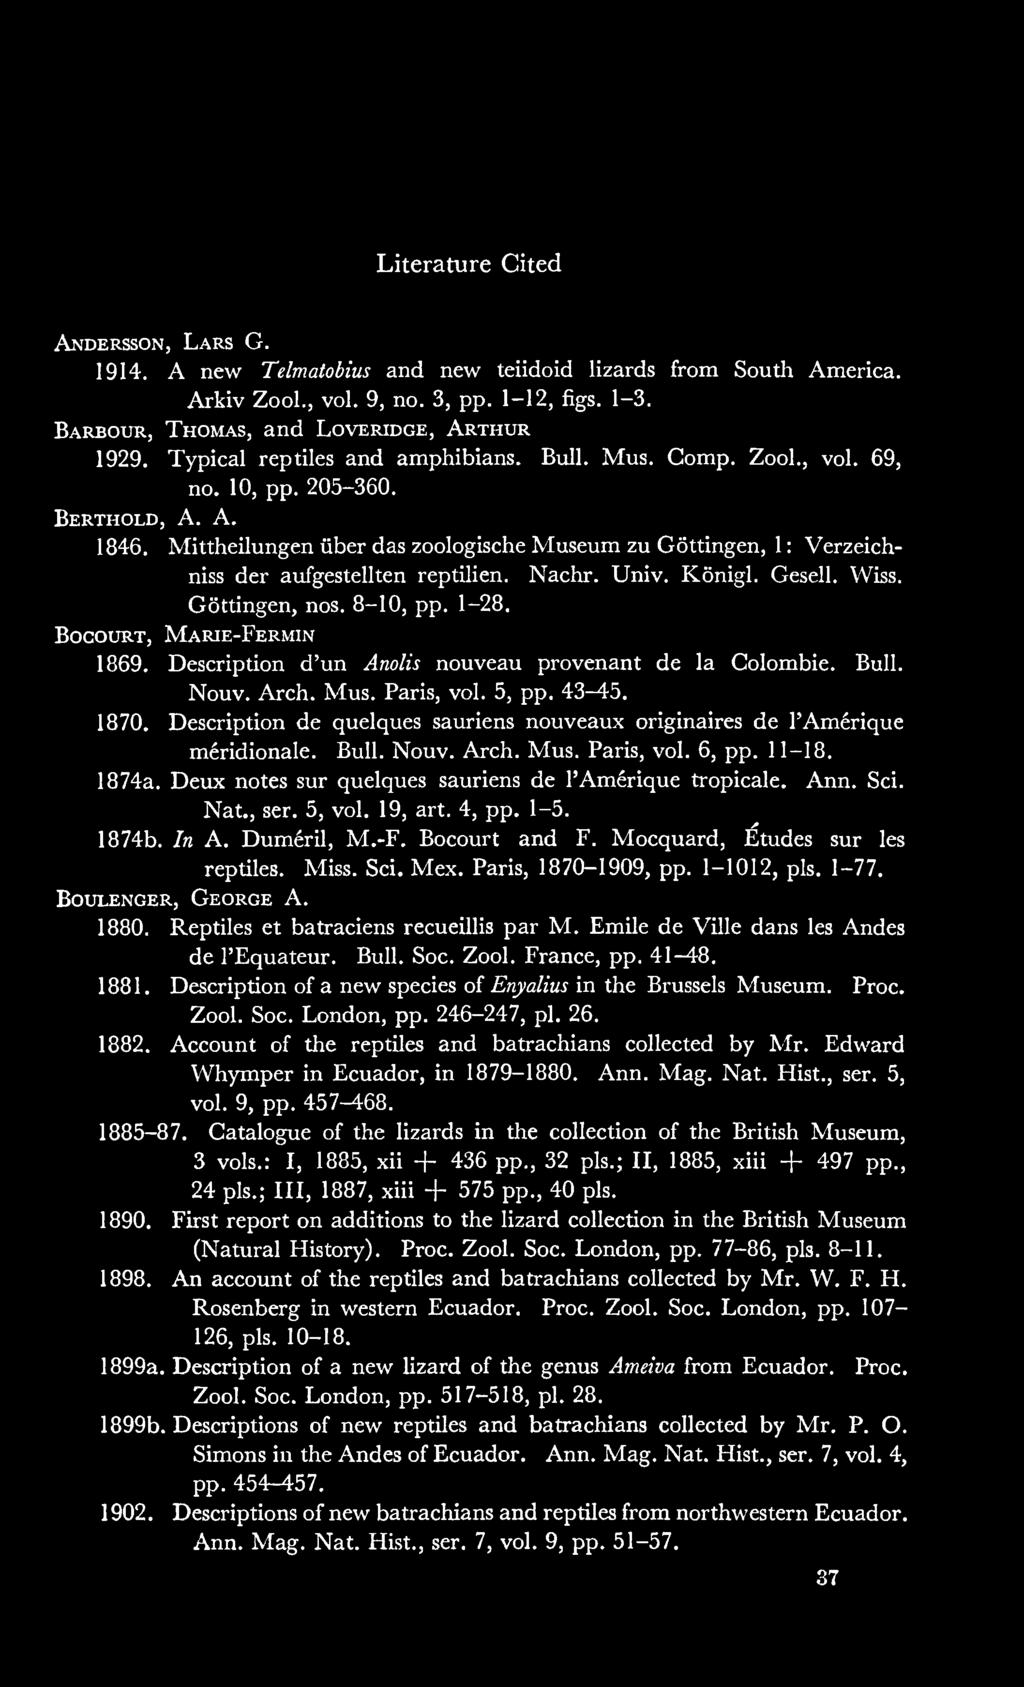 Mittheilungen iiber das zoologische Museum zu Gottingen, 1 : Verzeichniss der aufgestellten reptilien. Nachr. Univ. Konigl. Gesell. Wiss. Gottingen, nos. 8-10, pp. 1-28. BoGOURT, Marie-Fermin 1869.